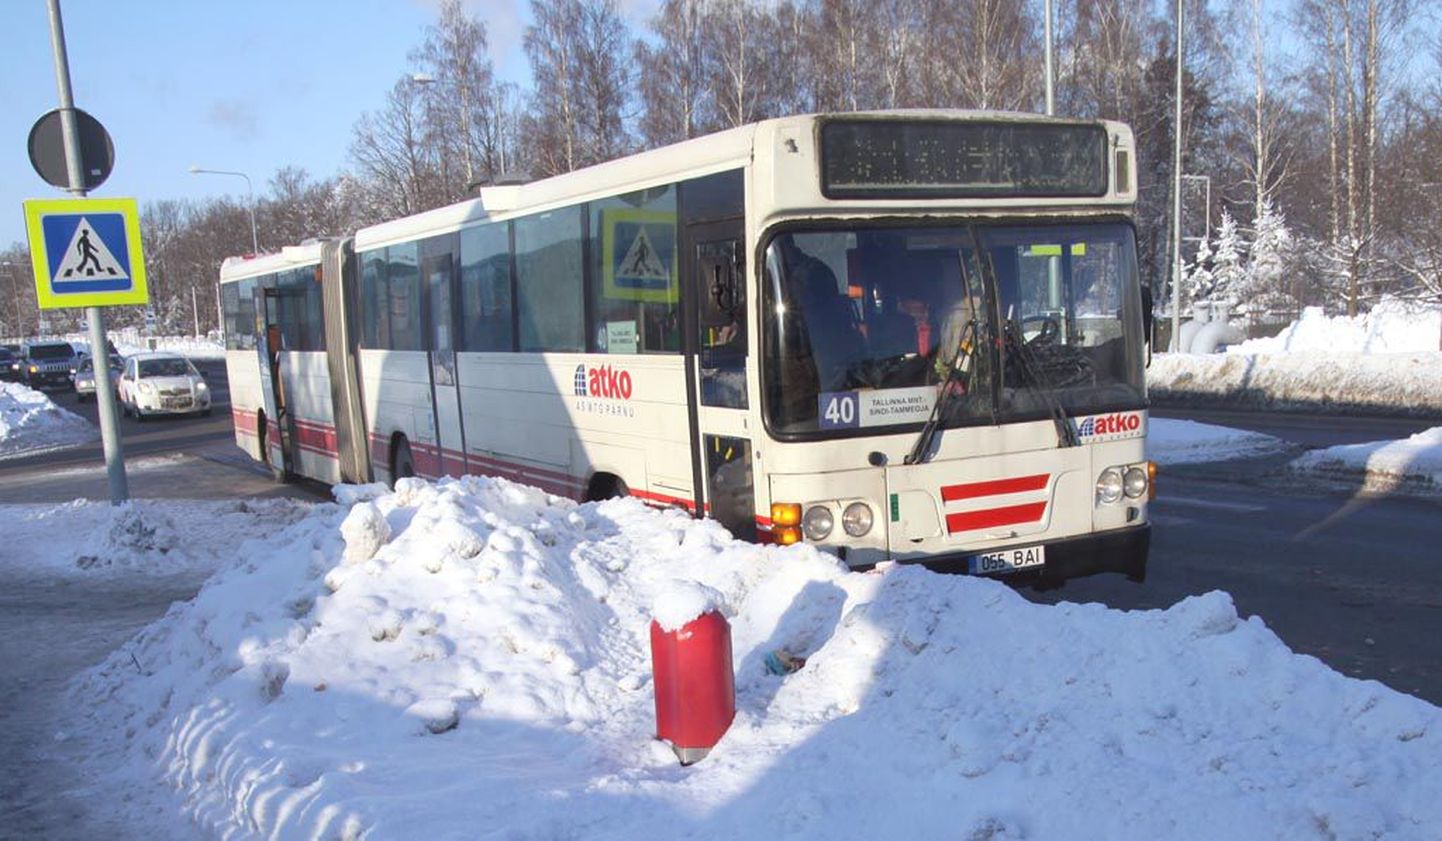 Sõidu katkemise põhjus võib olla liiklusavariigi, nagu juhtus AS MTG (Atko Grupp) bussiga liinil number 40 tänavu jaanuaris.